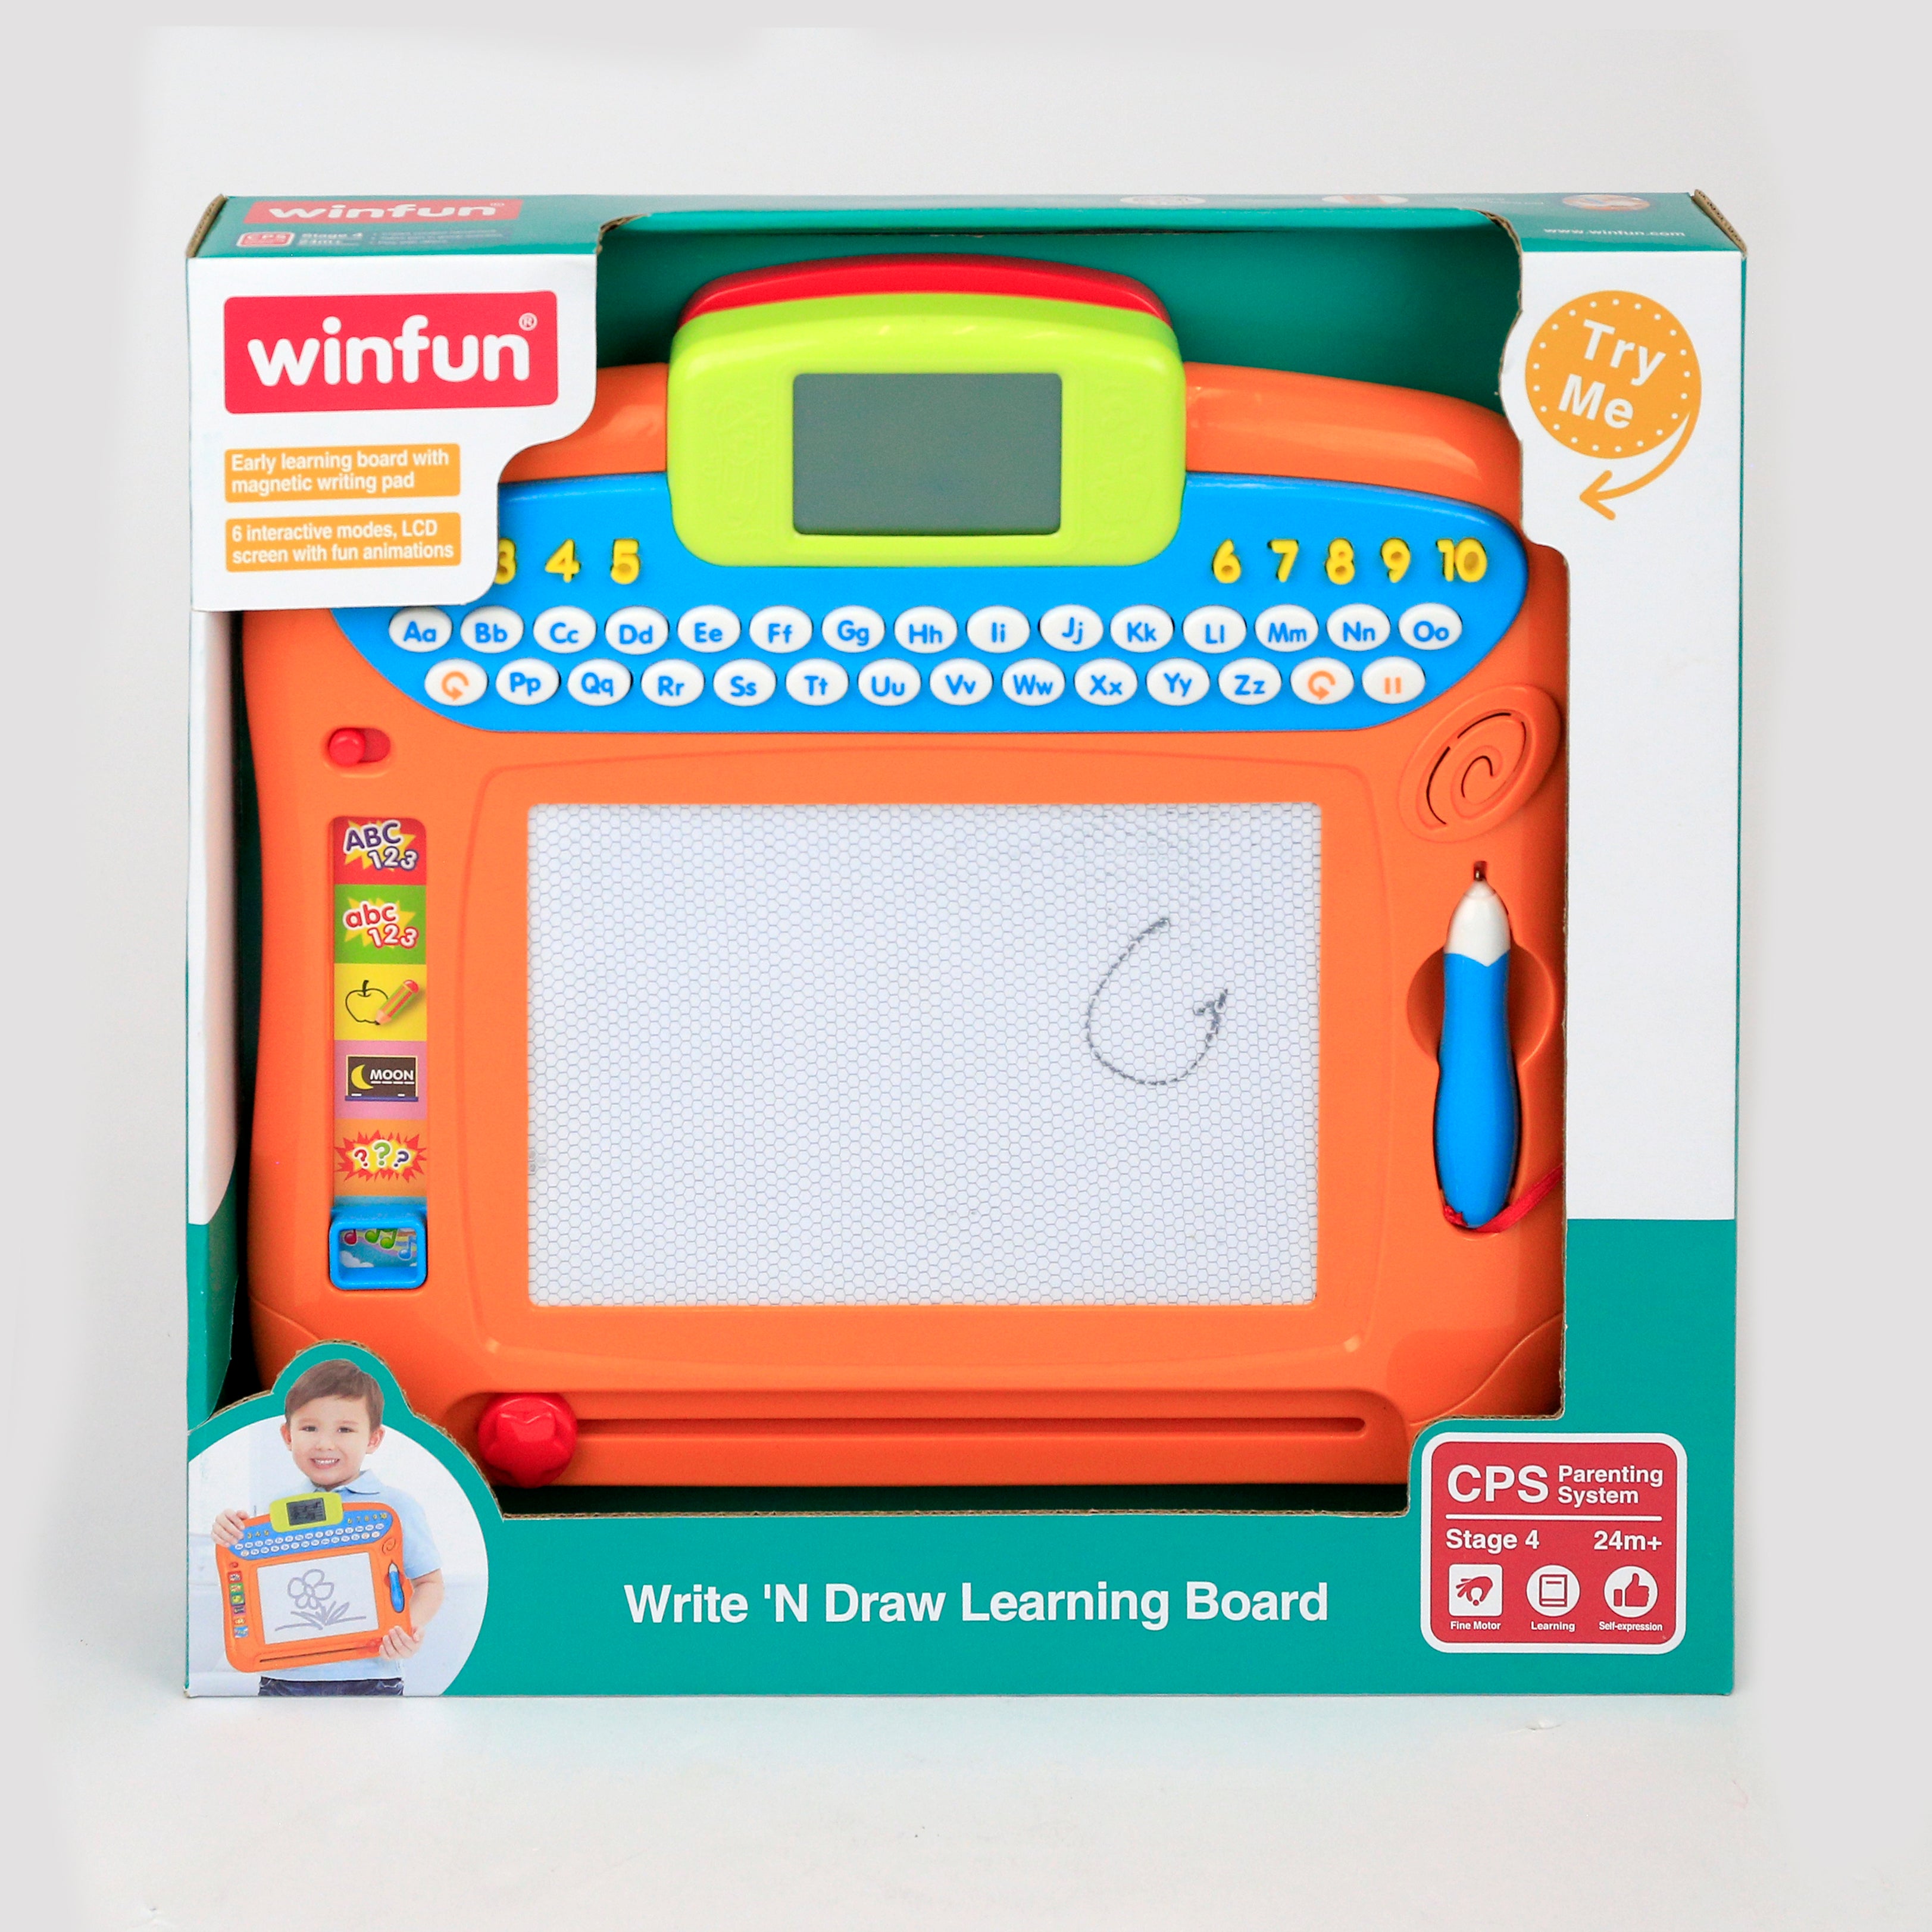 Winfun - Write N Draw Learning Board